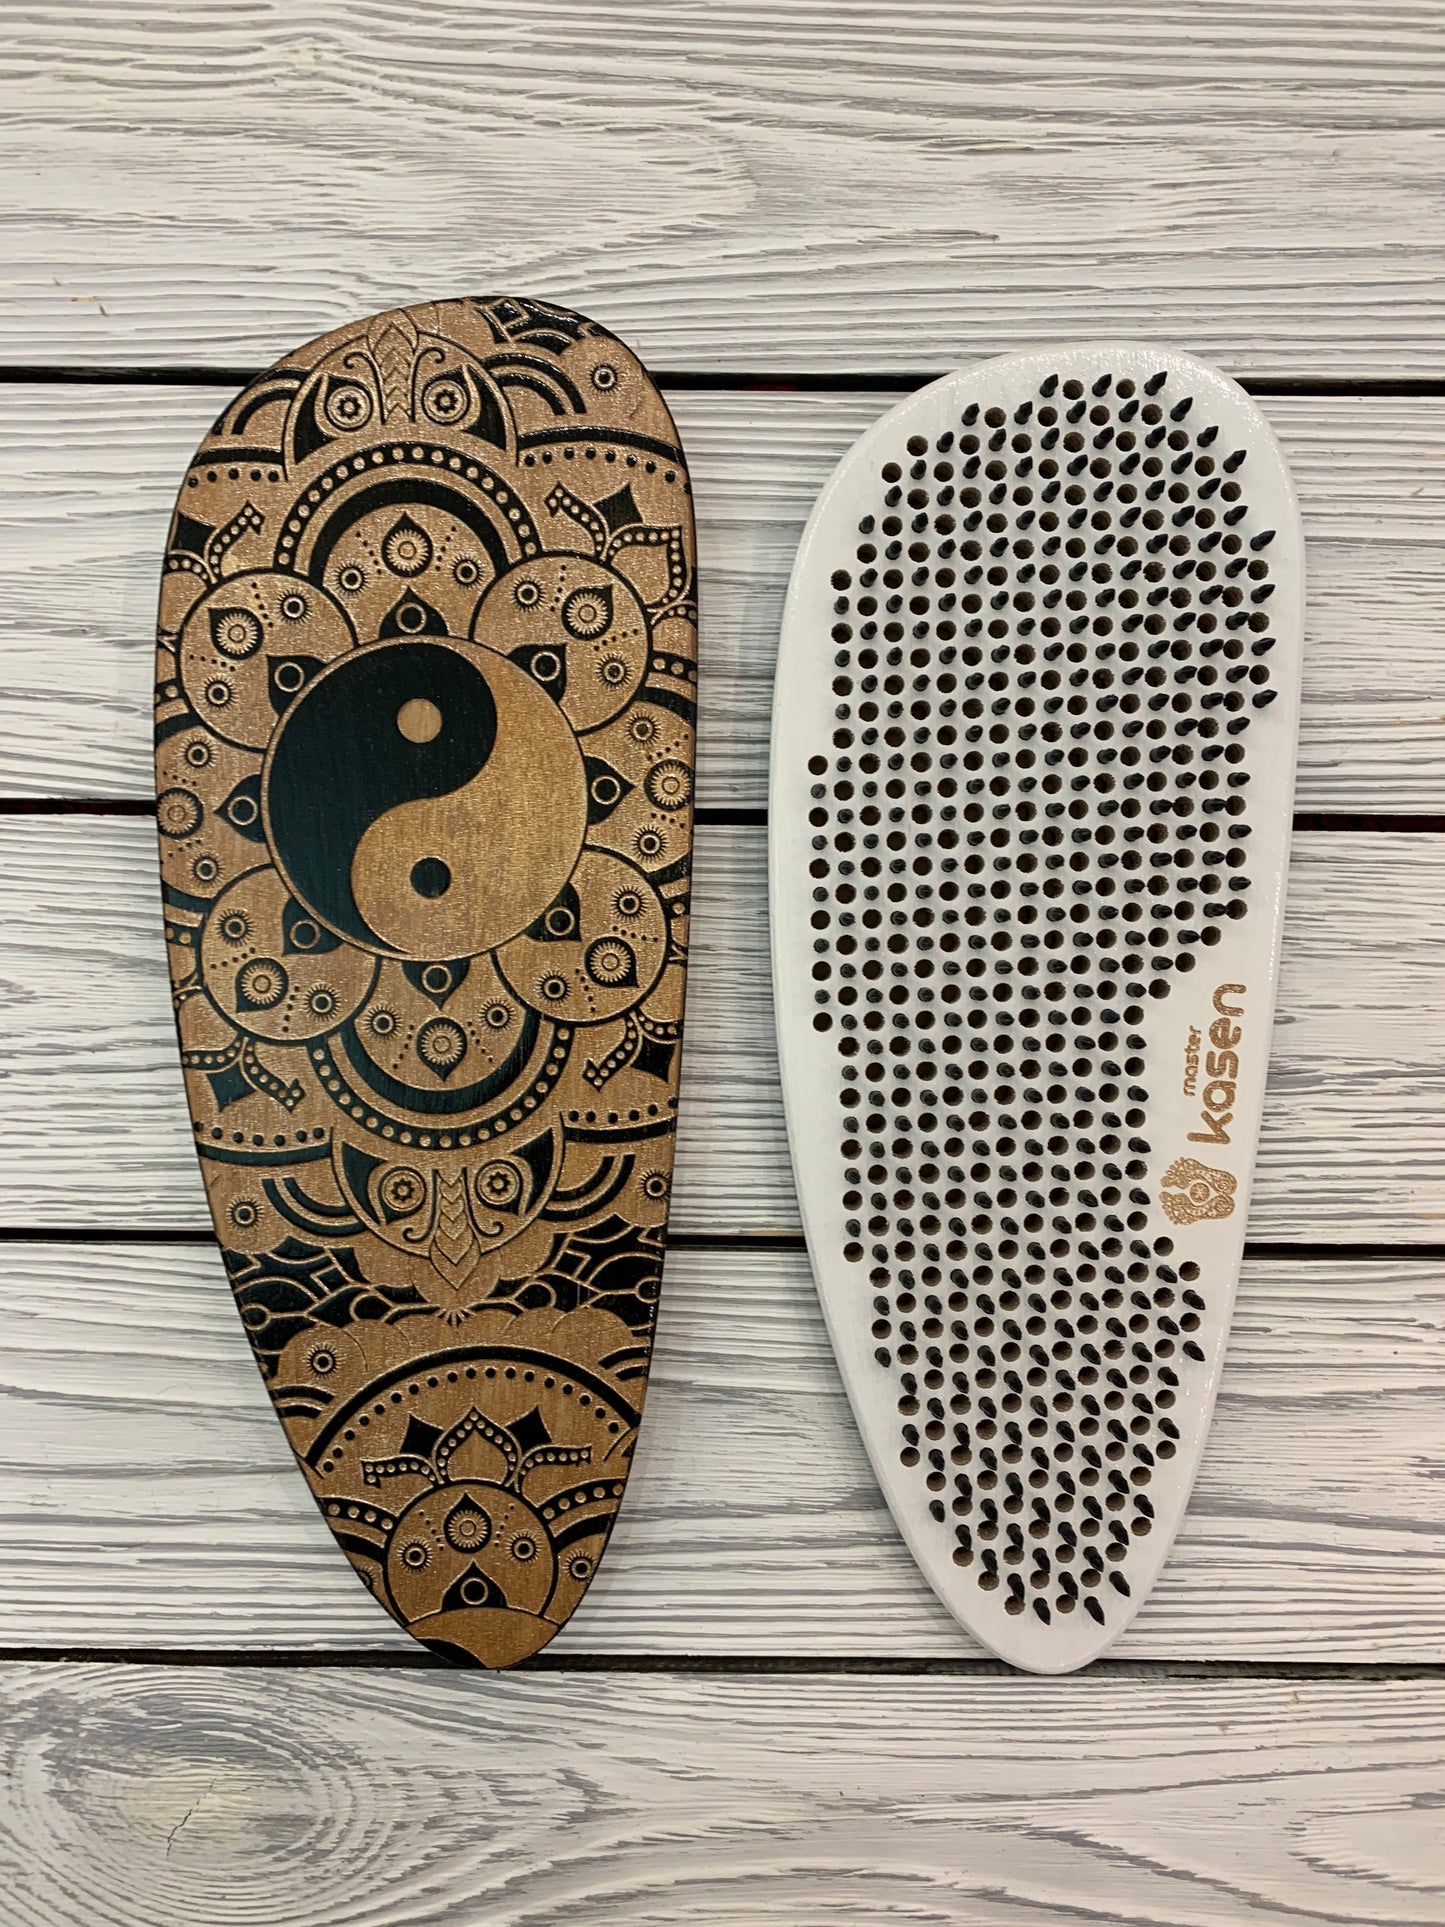 Sadhu board -Yin Yang, Balance board, Yoga board, Nails board, 10 mm